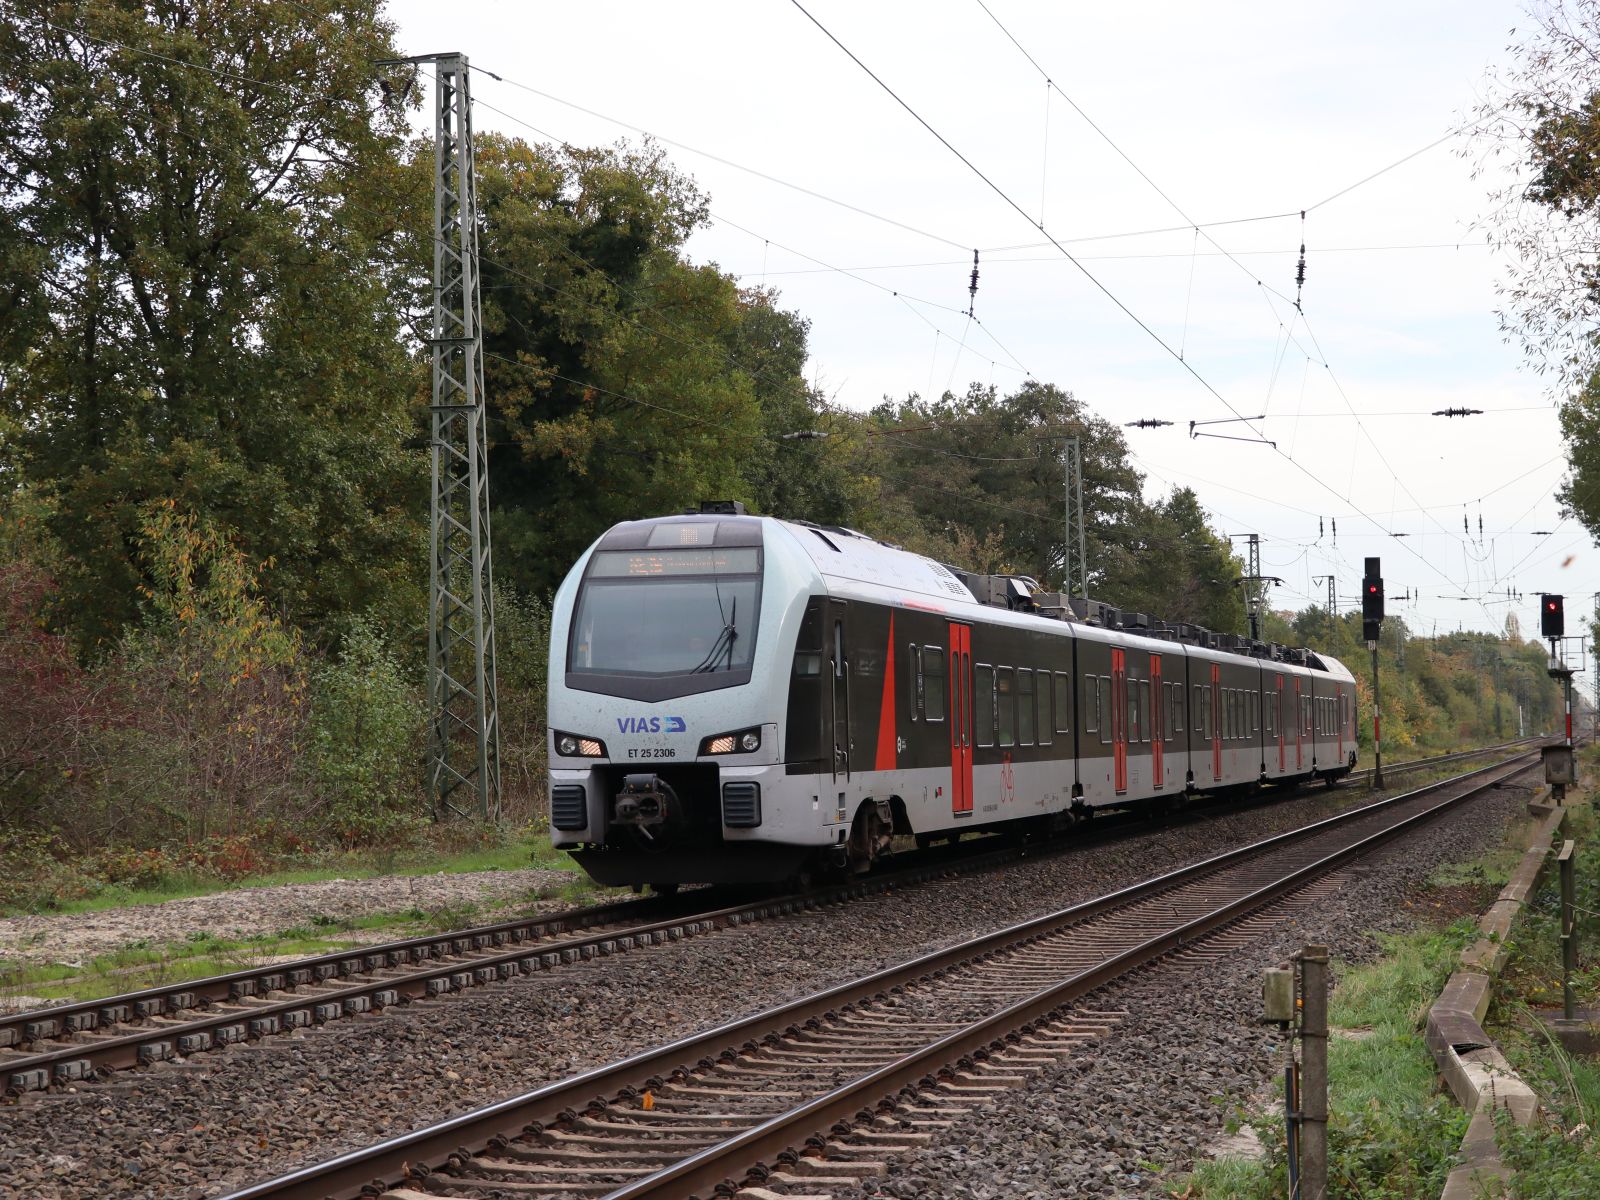 VIAS Triebzug ET 25 2306 Frietenweg, Hamminkeln 03-11-2022.

VIAS treinstel ET 25 2306 Frietenweg, Hamminkeln 03-11-2022.